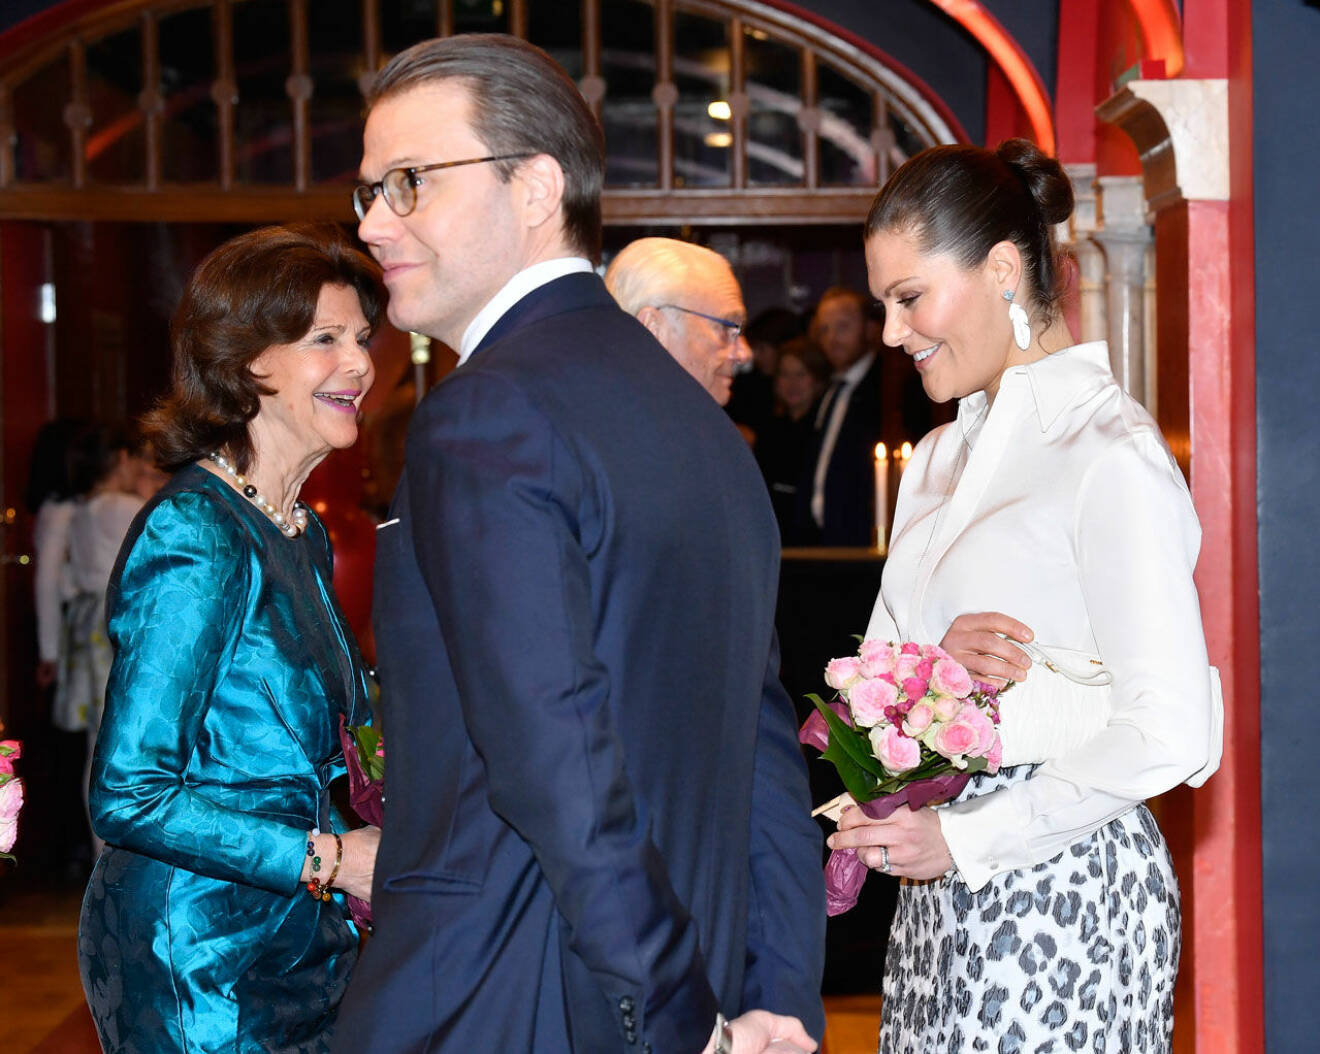 Drottning Silvia med prins Daniel och kronprinsessan Victoria, när hon firades av Lilla Akademien på Vasateatern.